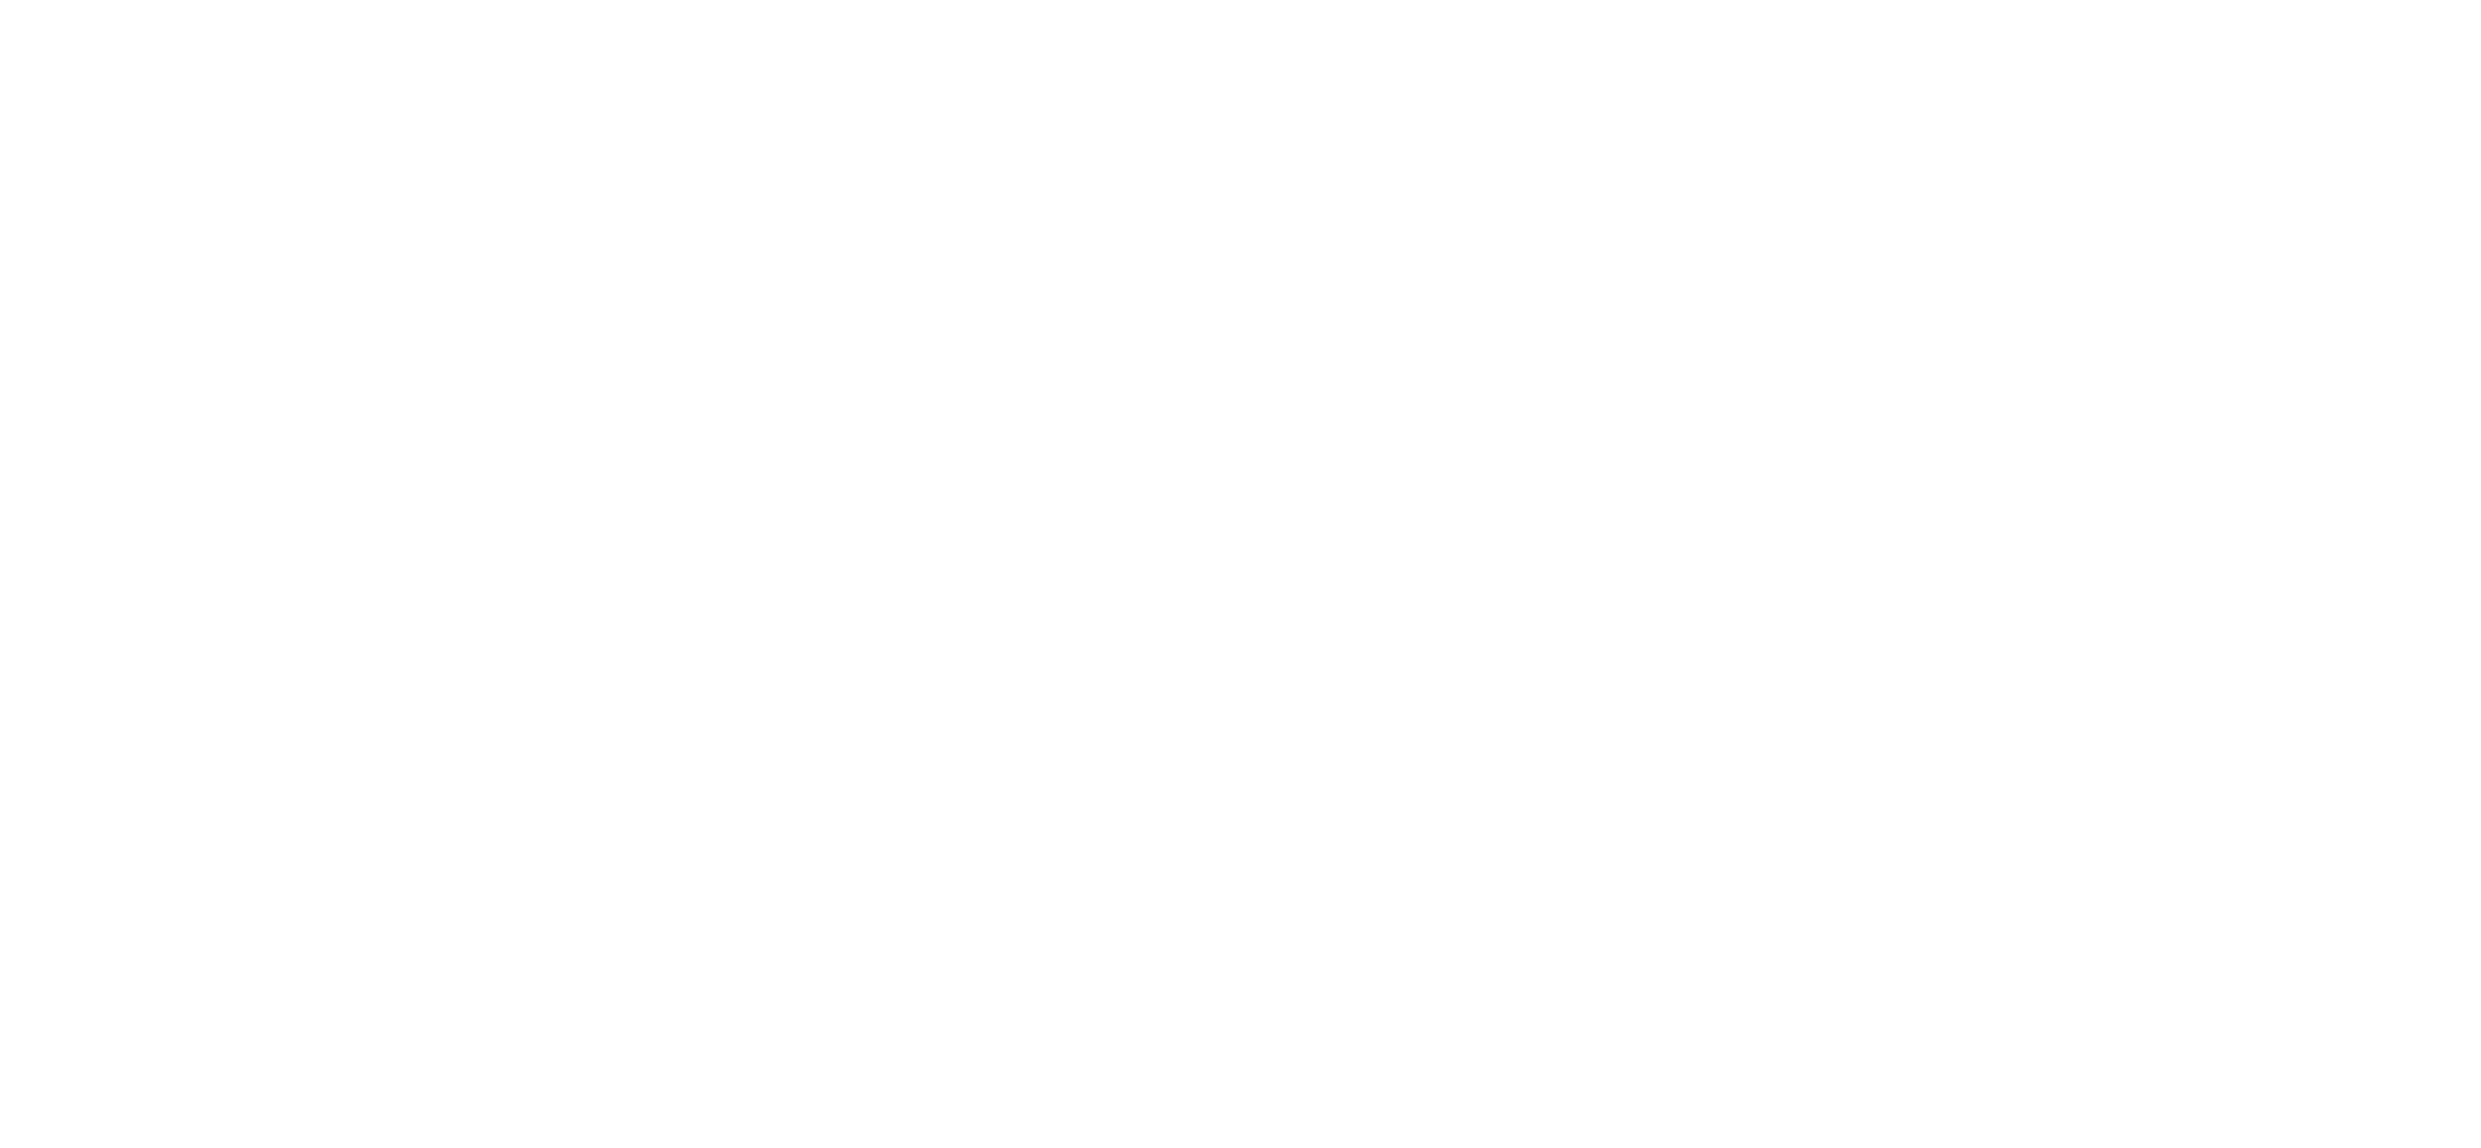 Les Halles de la Cité